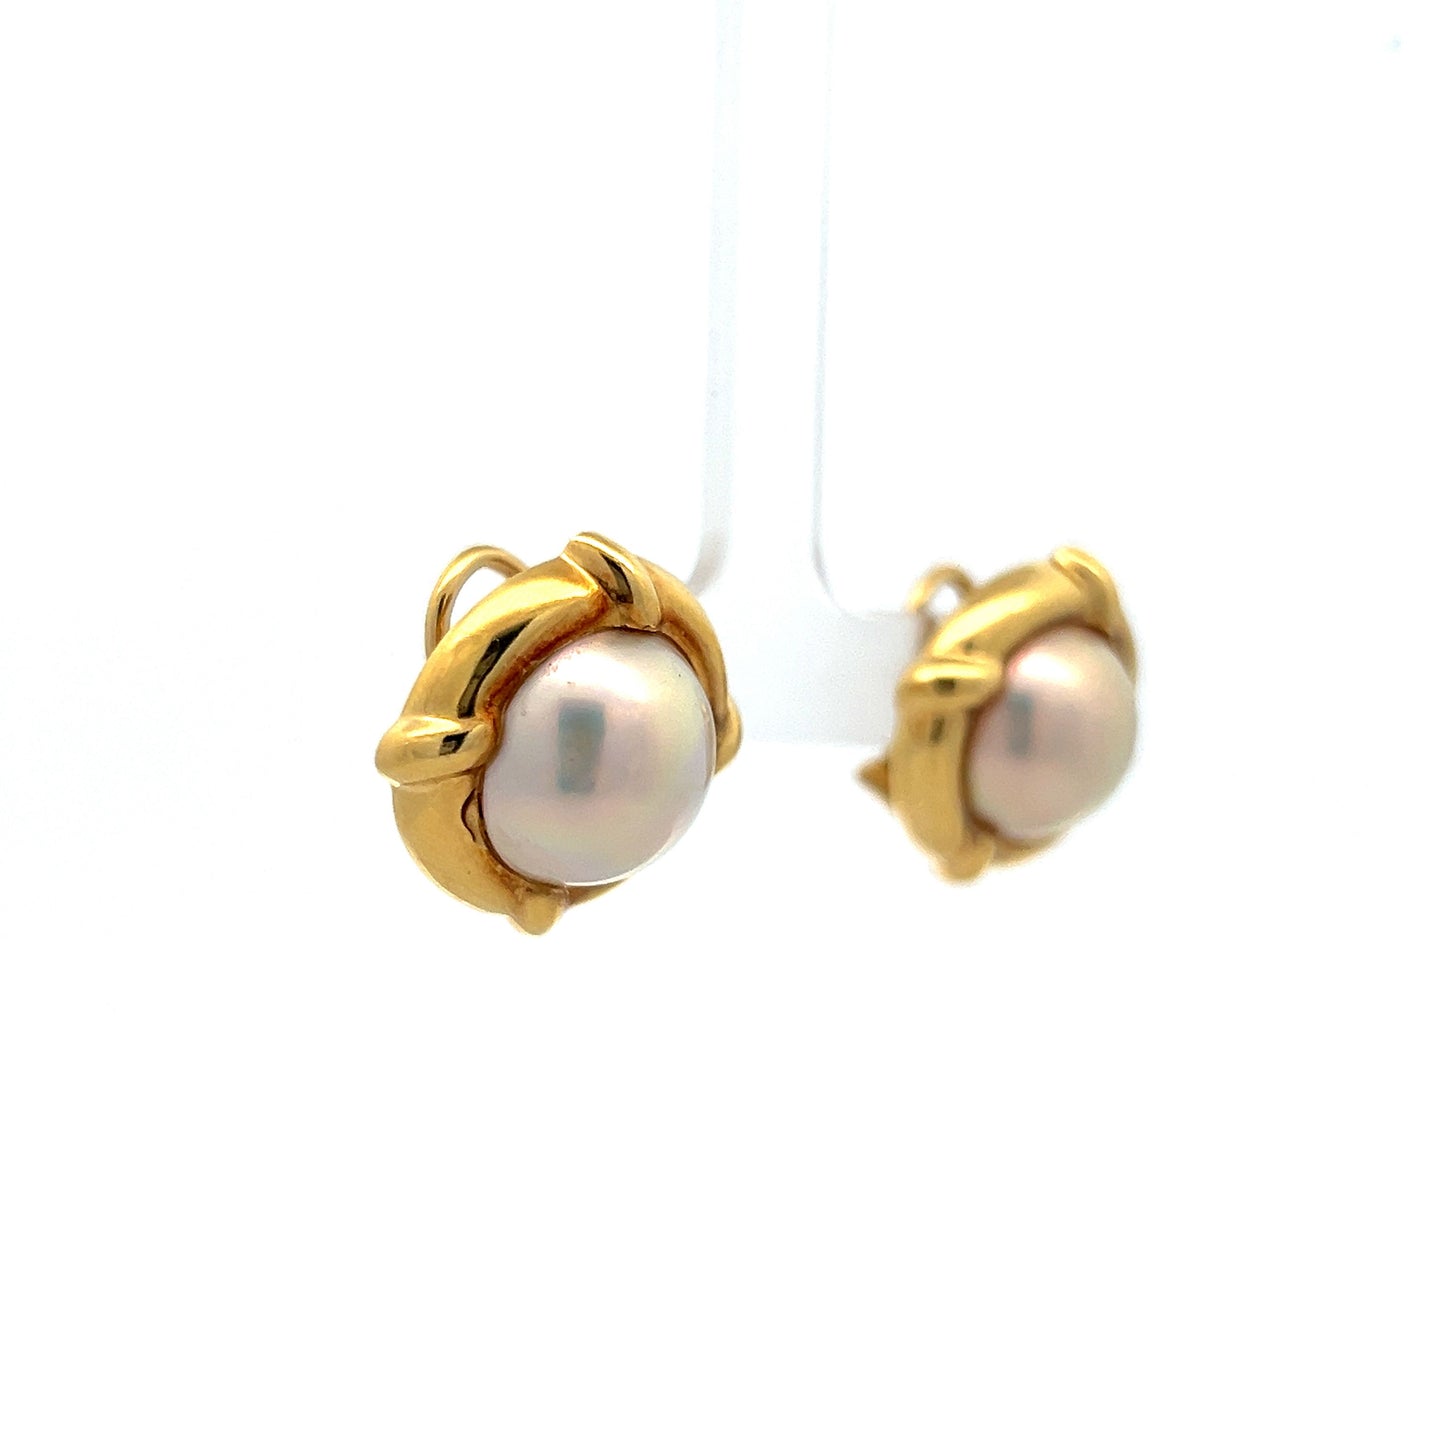 Tiffany & Co. Pearl Stud Earrings in 18k Yellow Gold